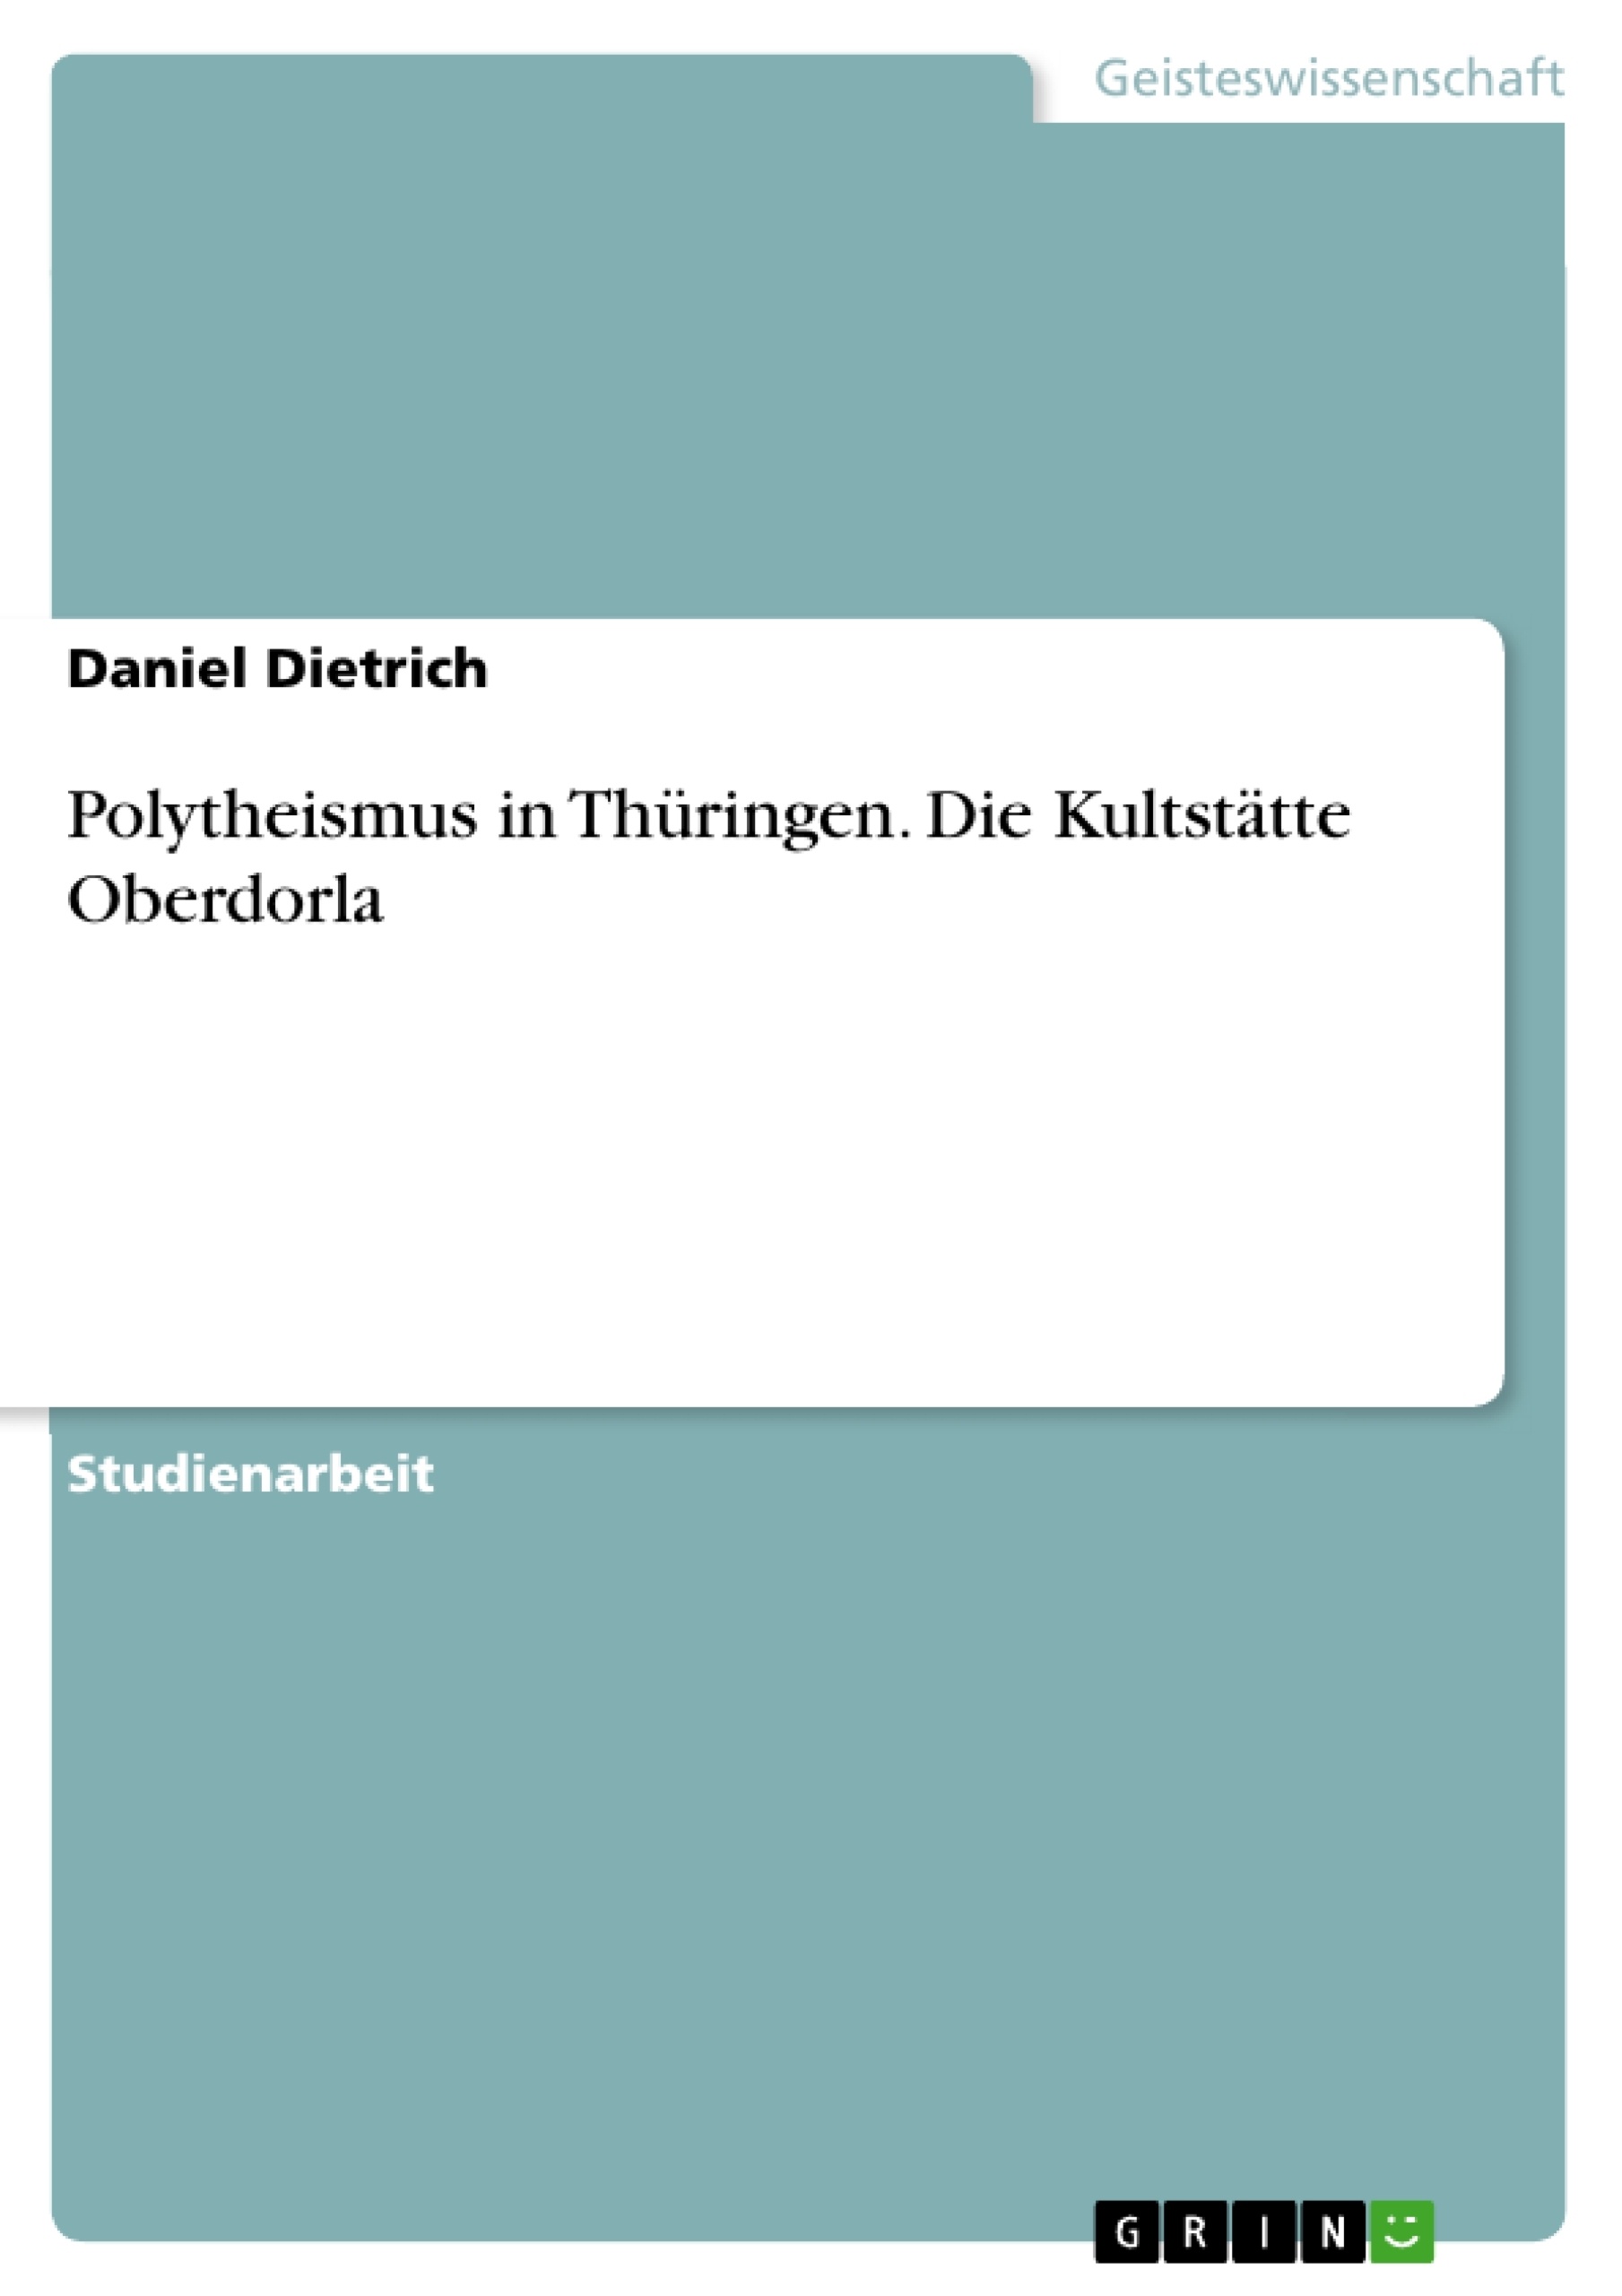 Título: Polytheismus in Thüringen. Die Kultstätte Oberdorla